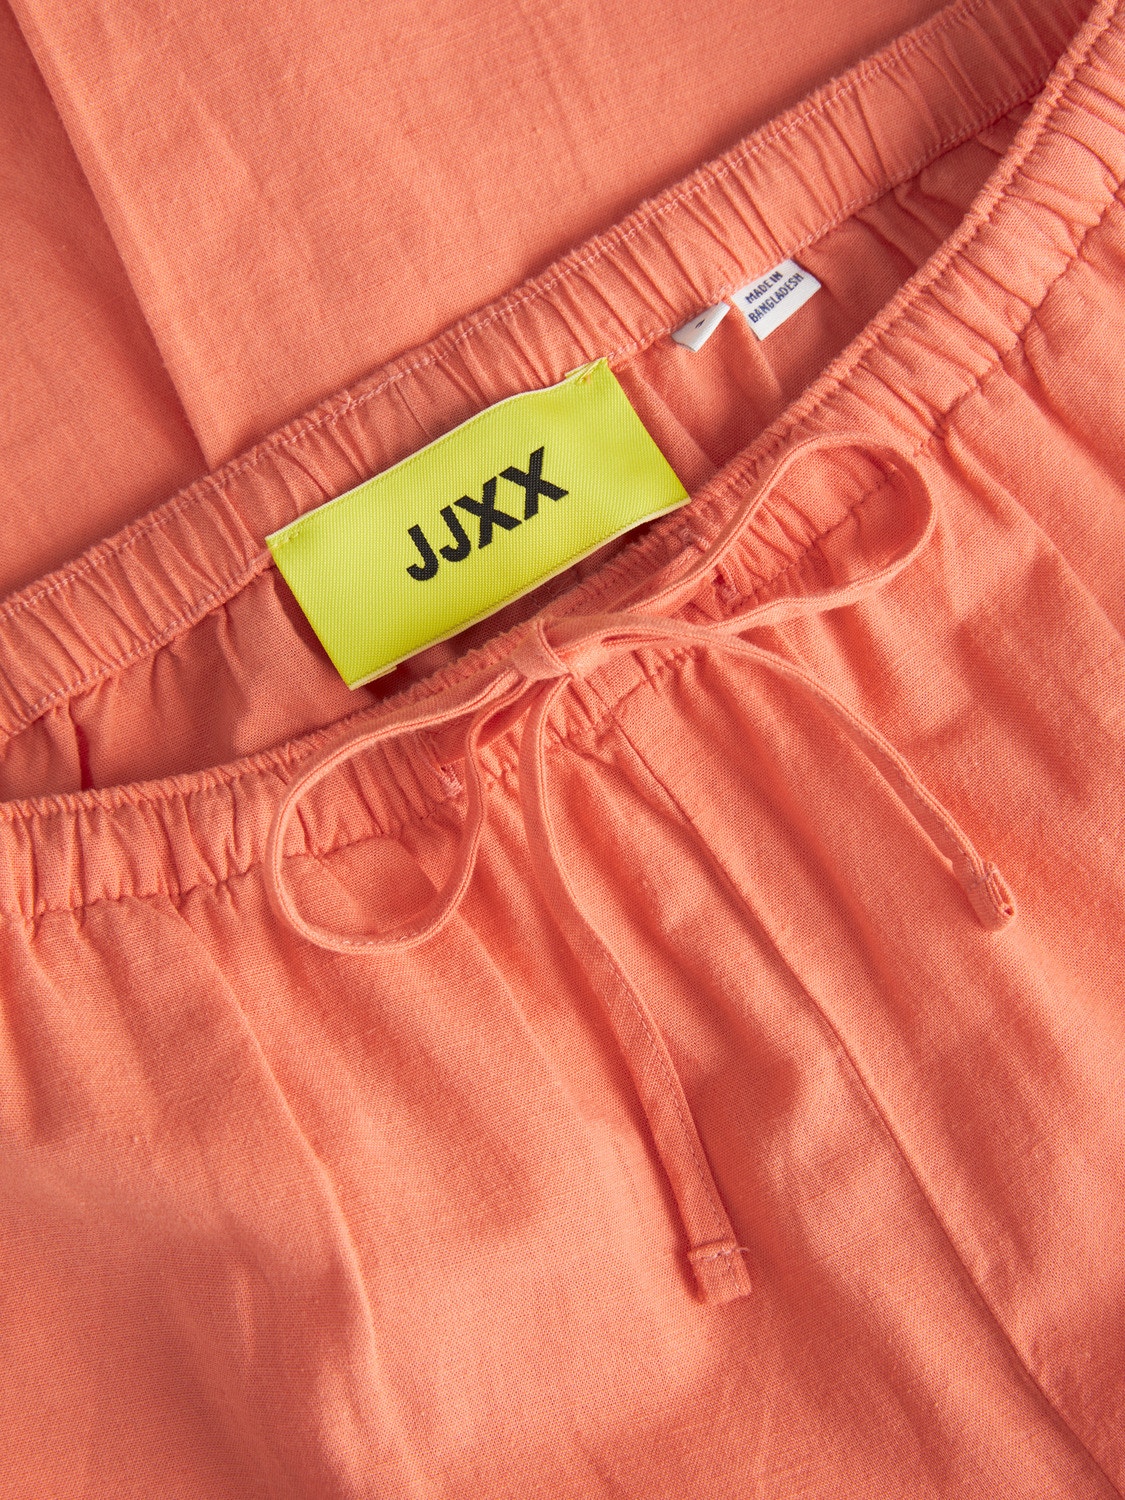 JJXX JXFLORA Classic trousers -Peach Echo  - 12249649